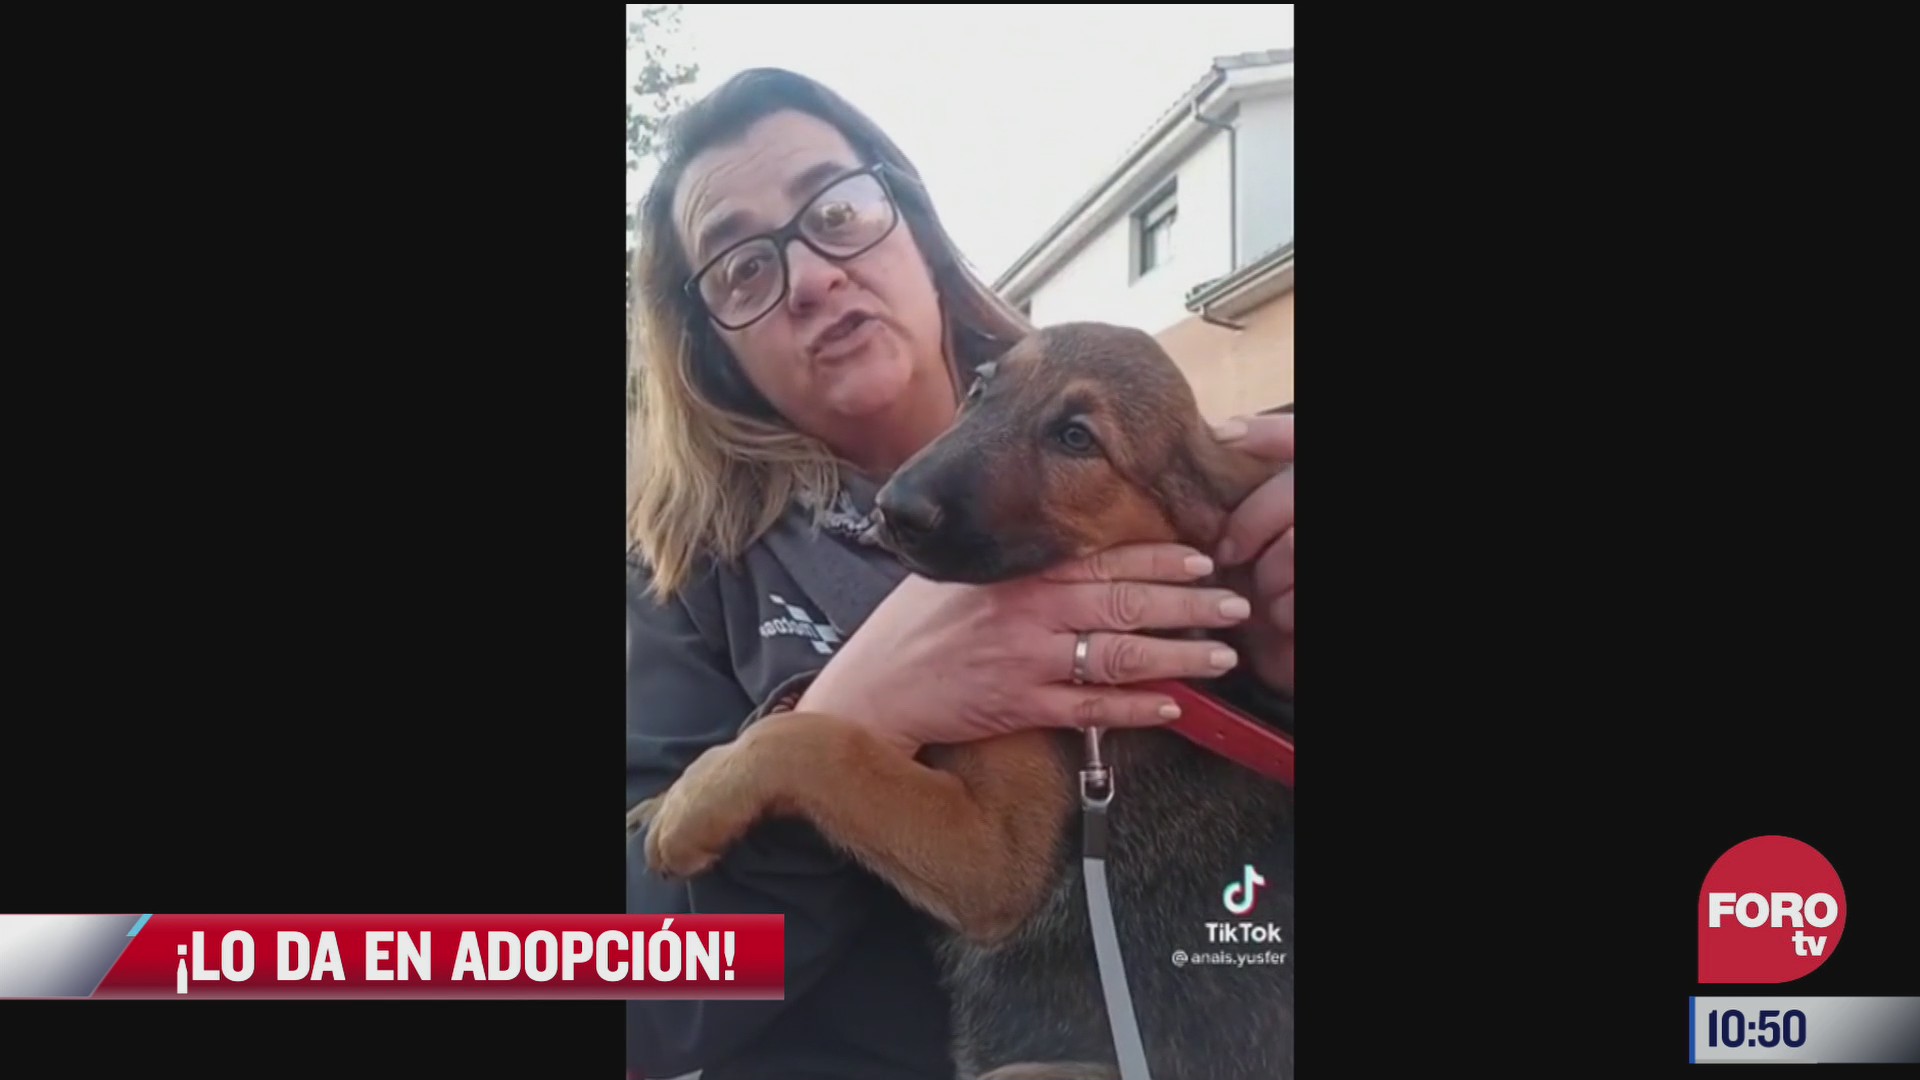 senora adopta a un perrito y da en adopcion a su esposo